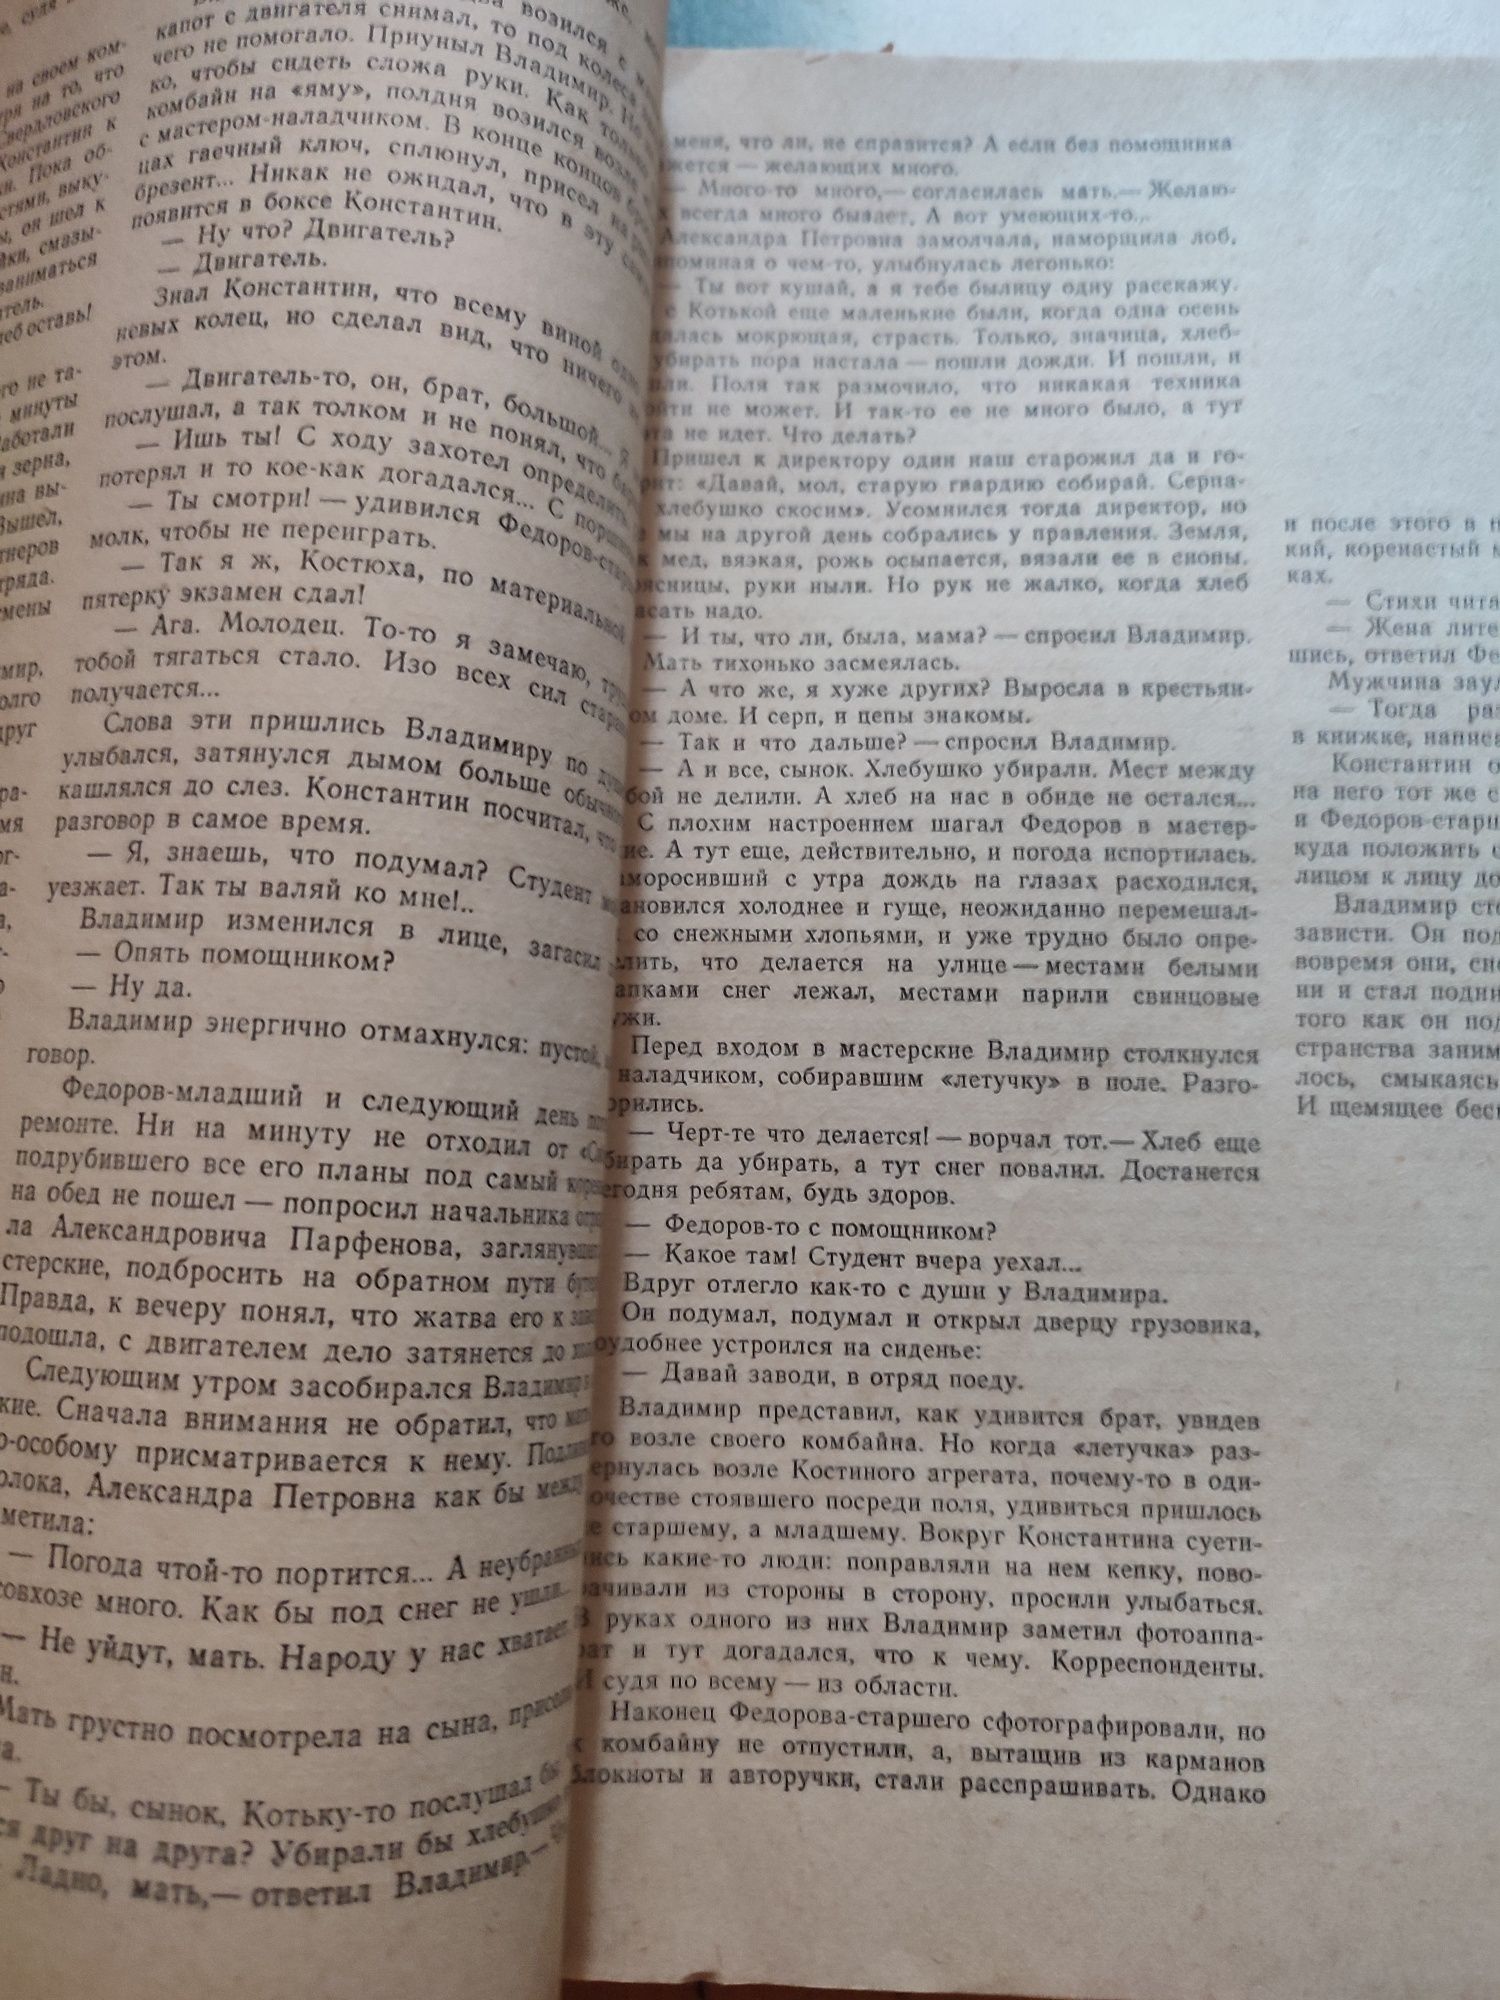 Журнал Уральский следопыт 1984, 1985г